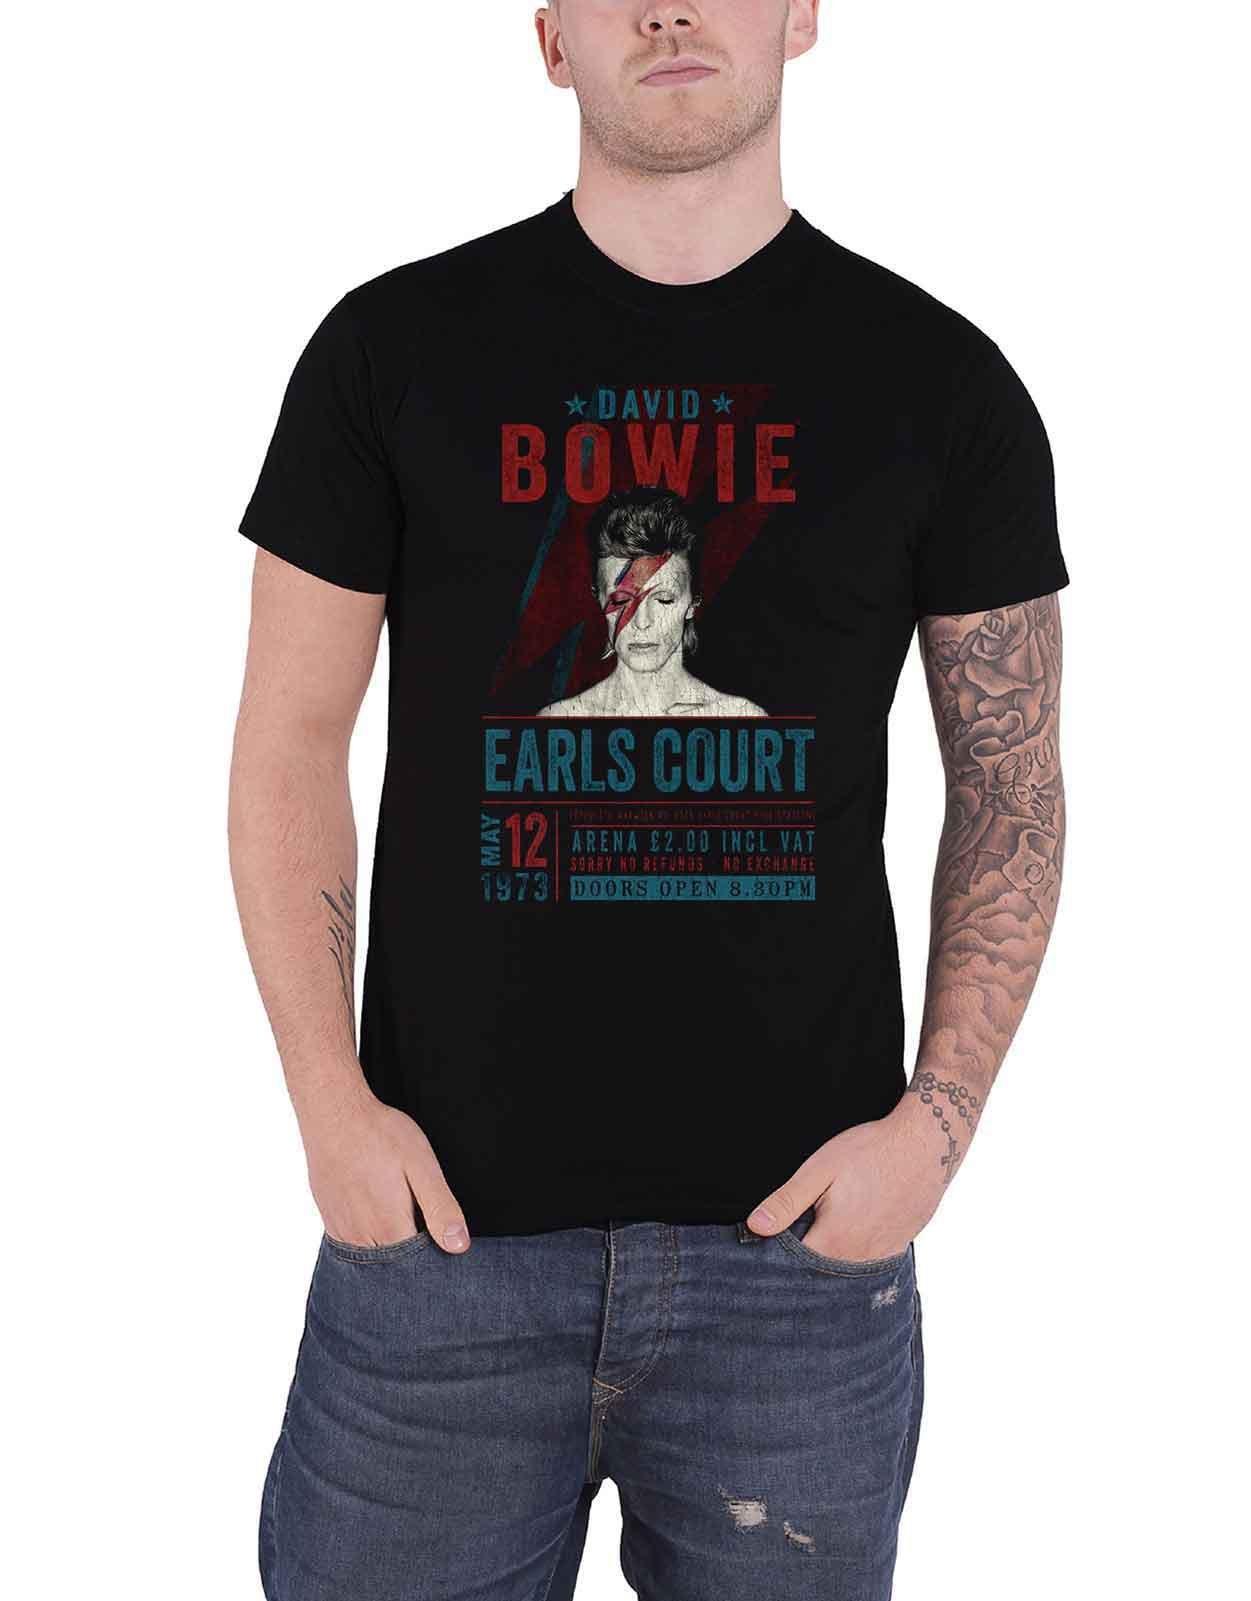 цена Эко-футболка Earls Court 1973 года с плакатом David Bowie, черный